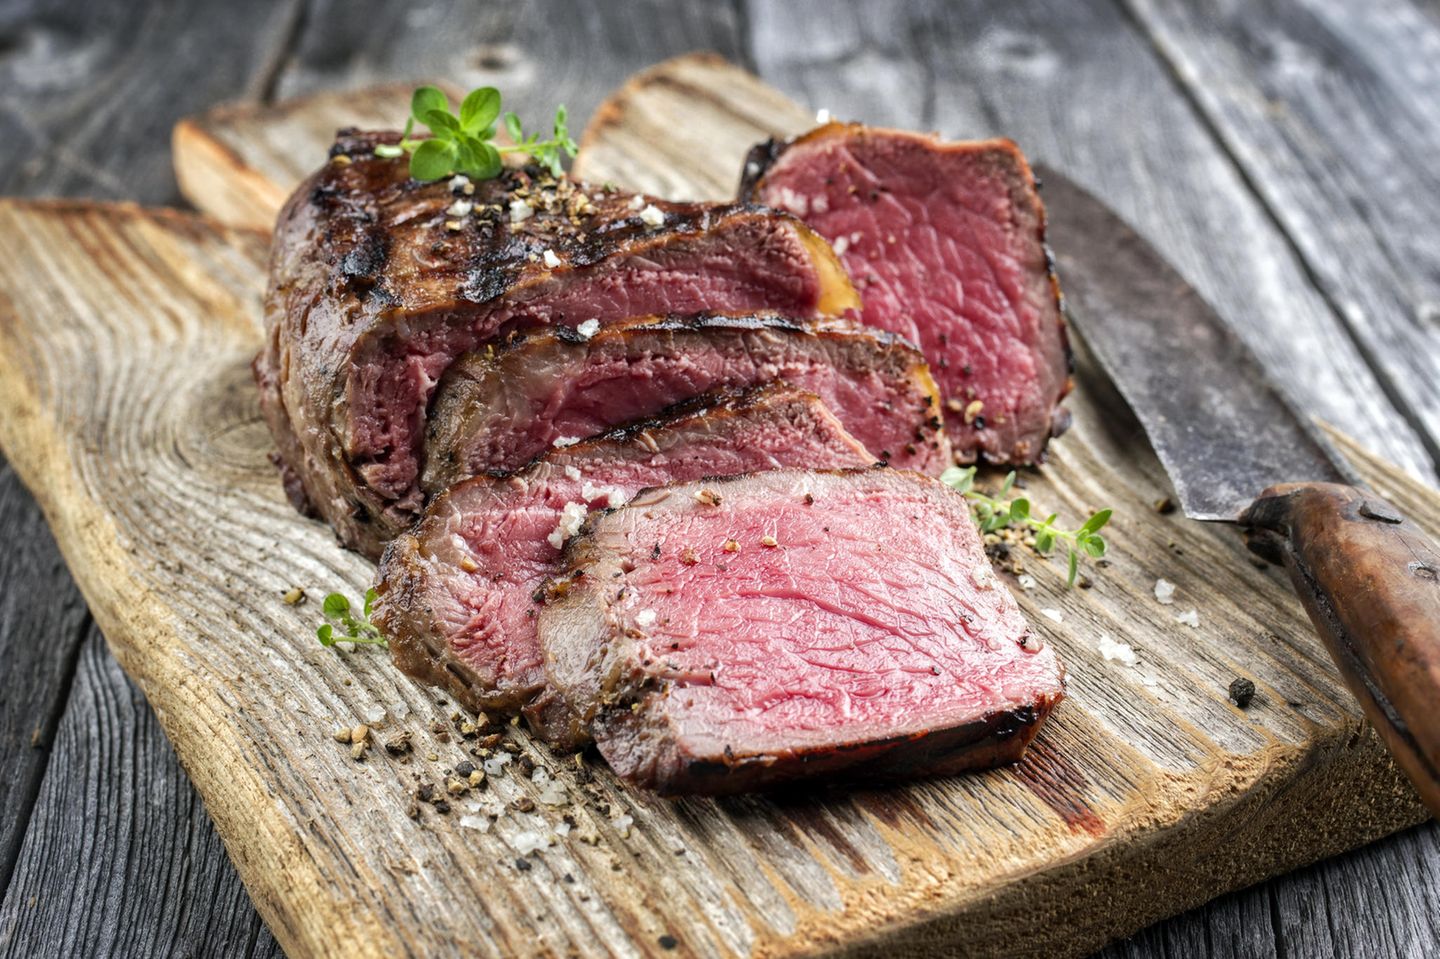 Rindfleisch grillen: Frisch geschnittene Tranchen auf einem Brett